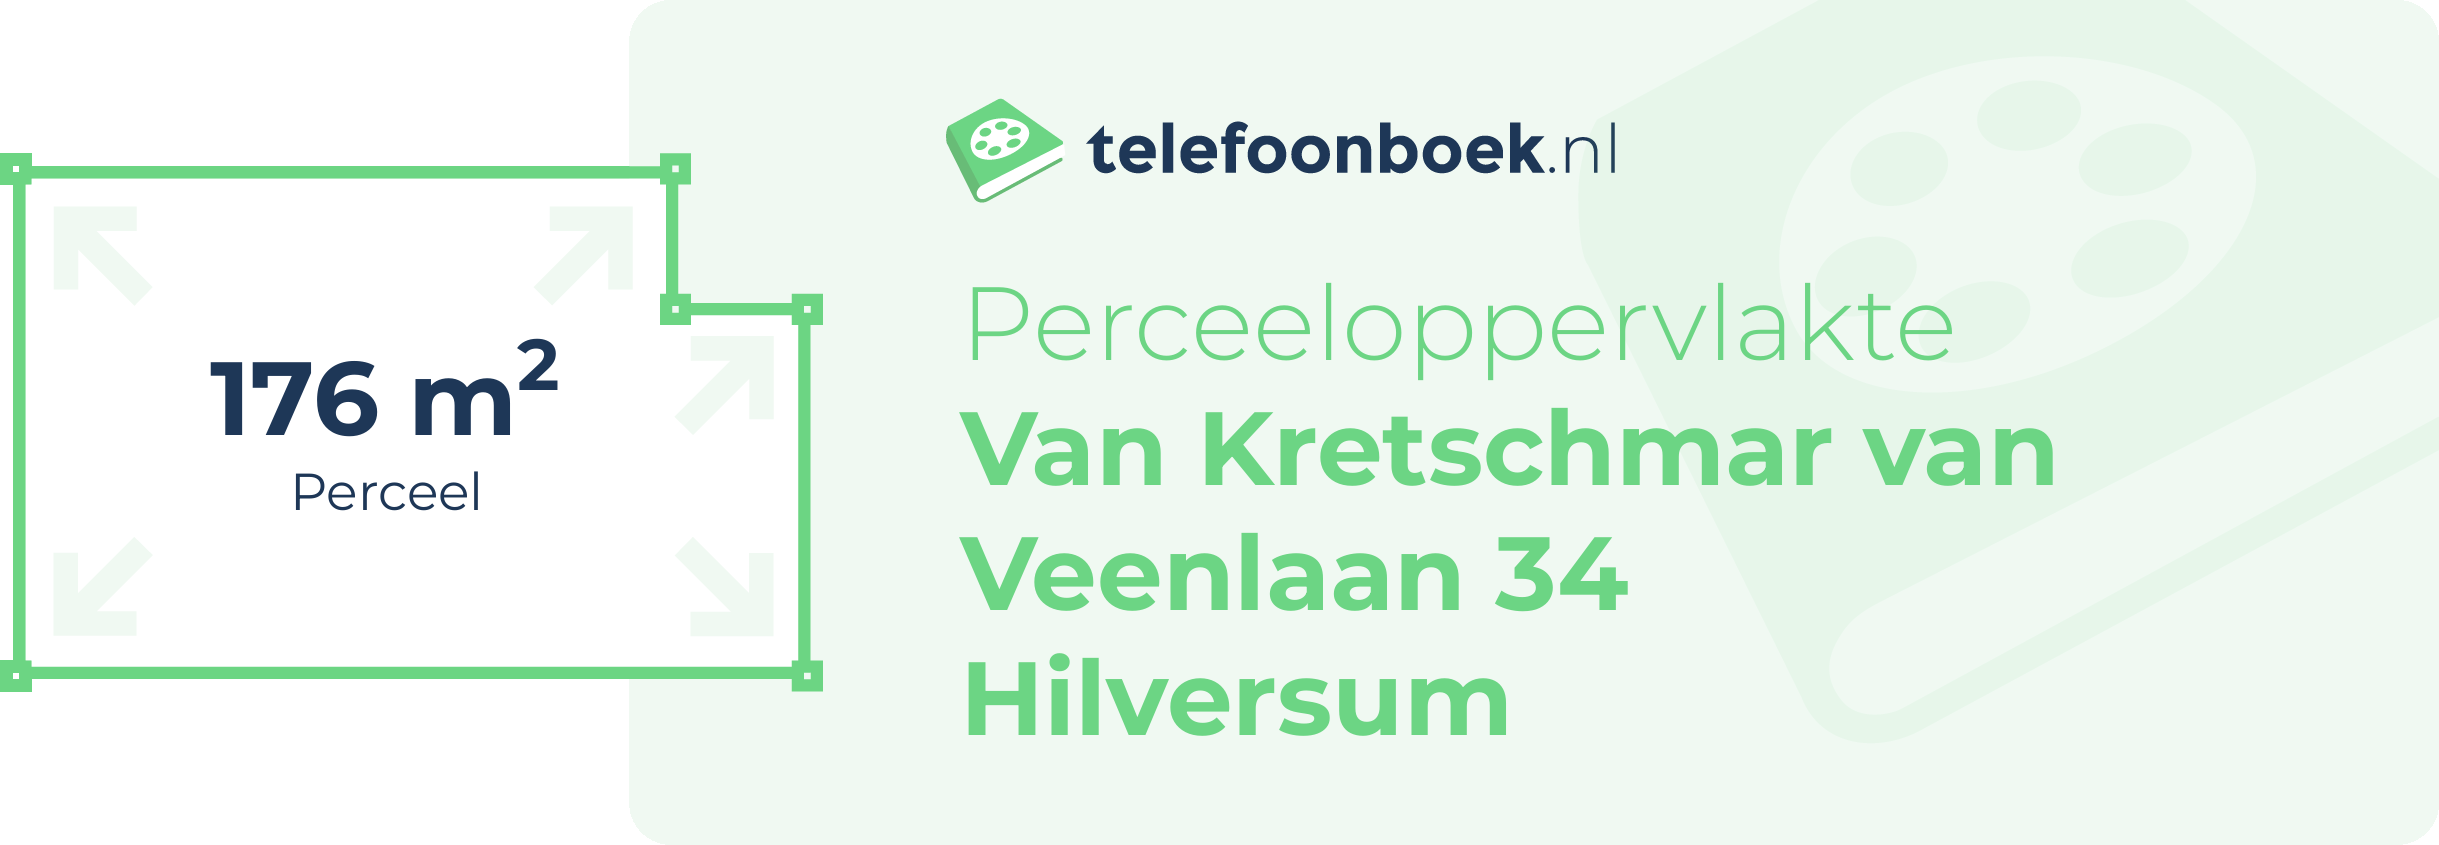 Perceeloppervlakte Van Kretschmar Van Veenlaan 34 Hilversum